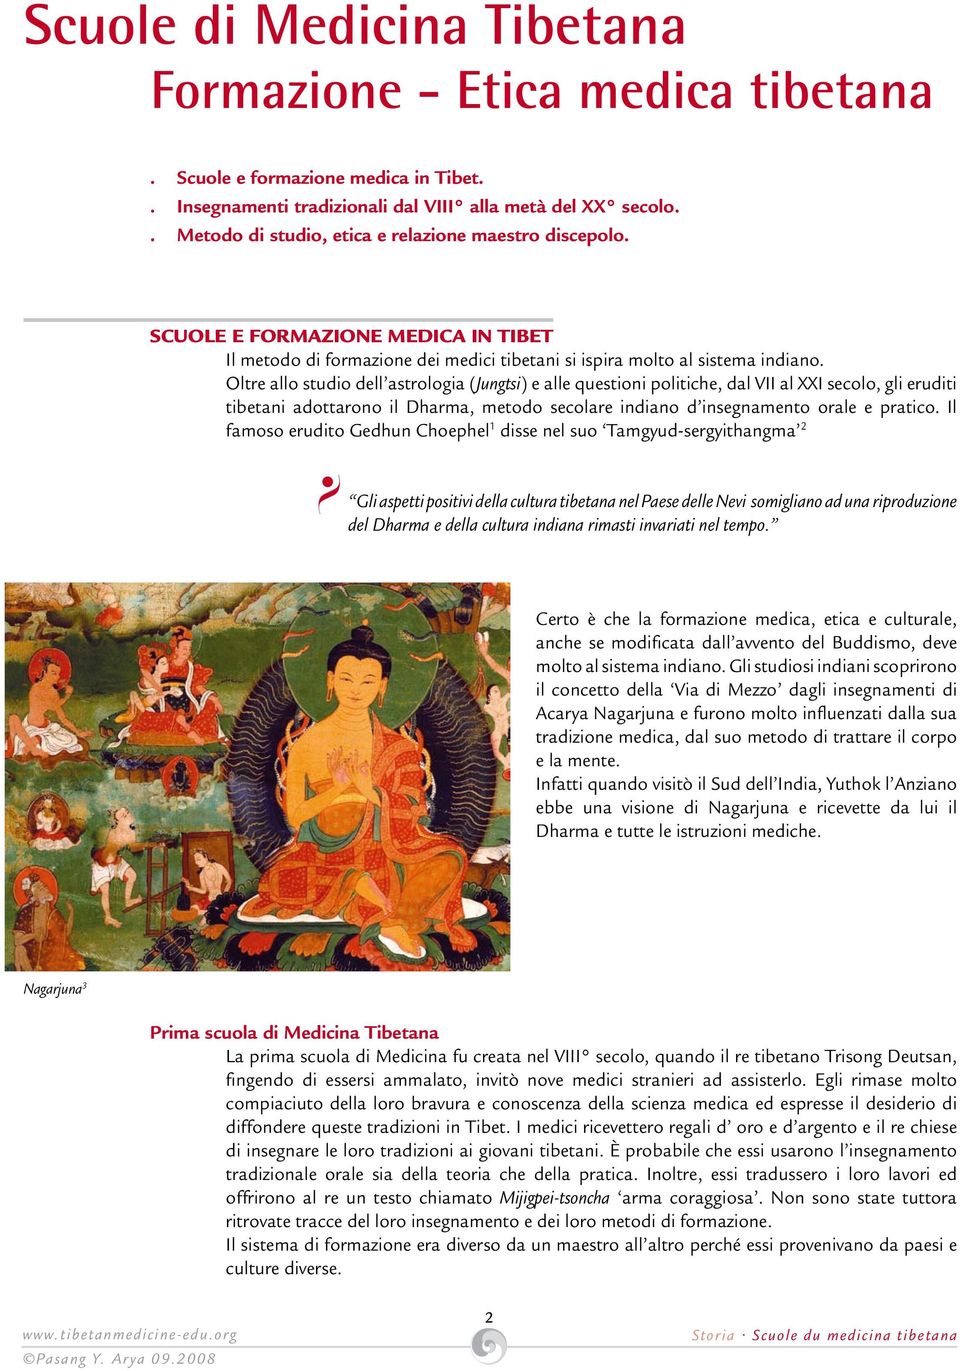 Oltre allo studio dell astrologia (Jungtsi) e alle questioni politiche, dal VII al XXI secolo, gli eruditi tibetani adottarono il Dharma, metodo secolare indiano d insegnamento orale e pratico.